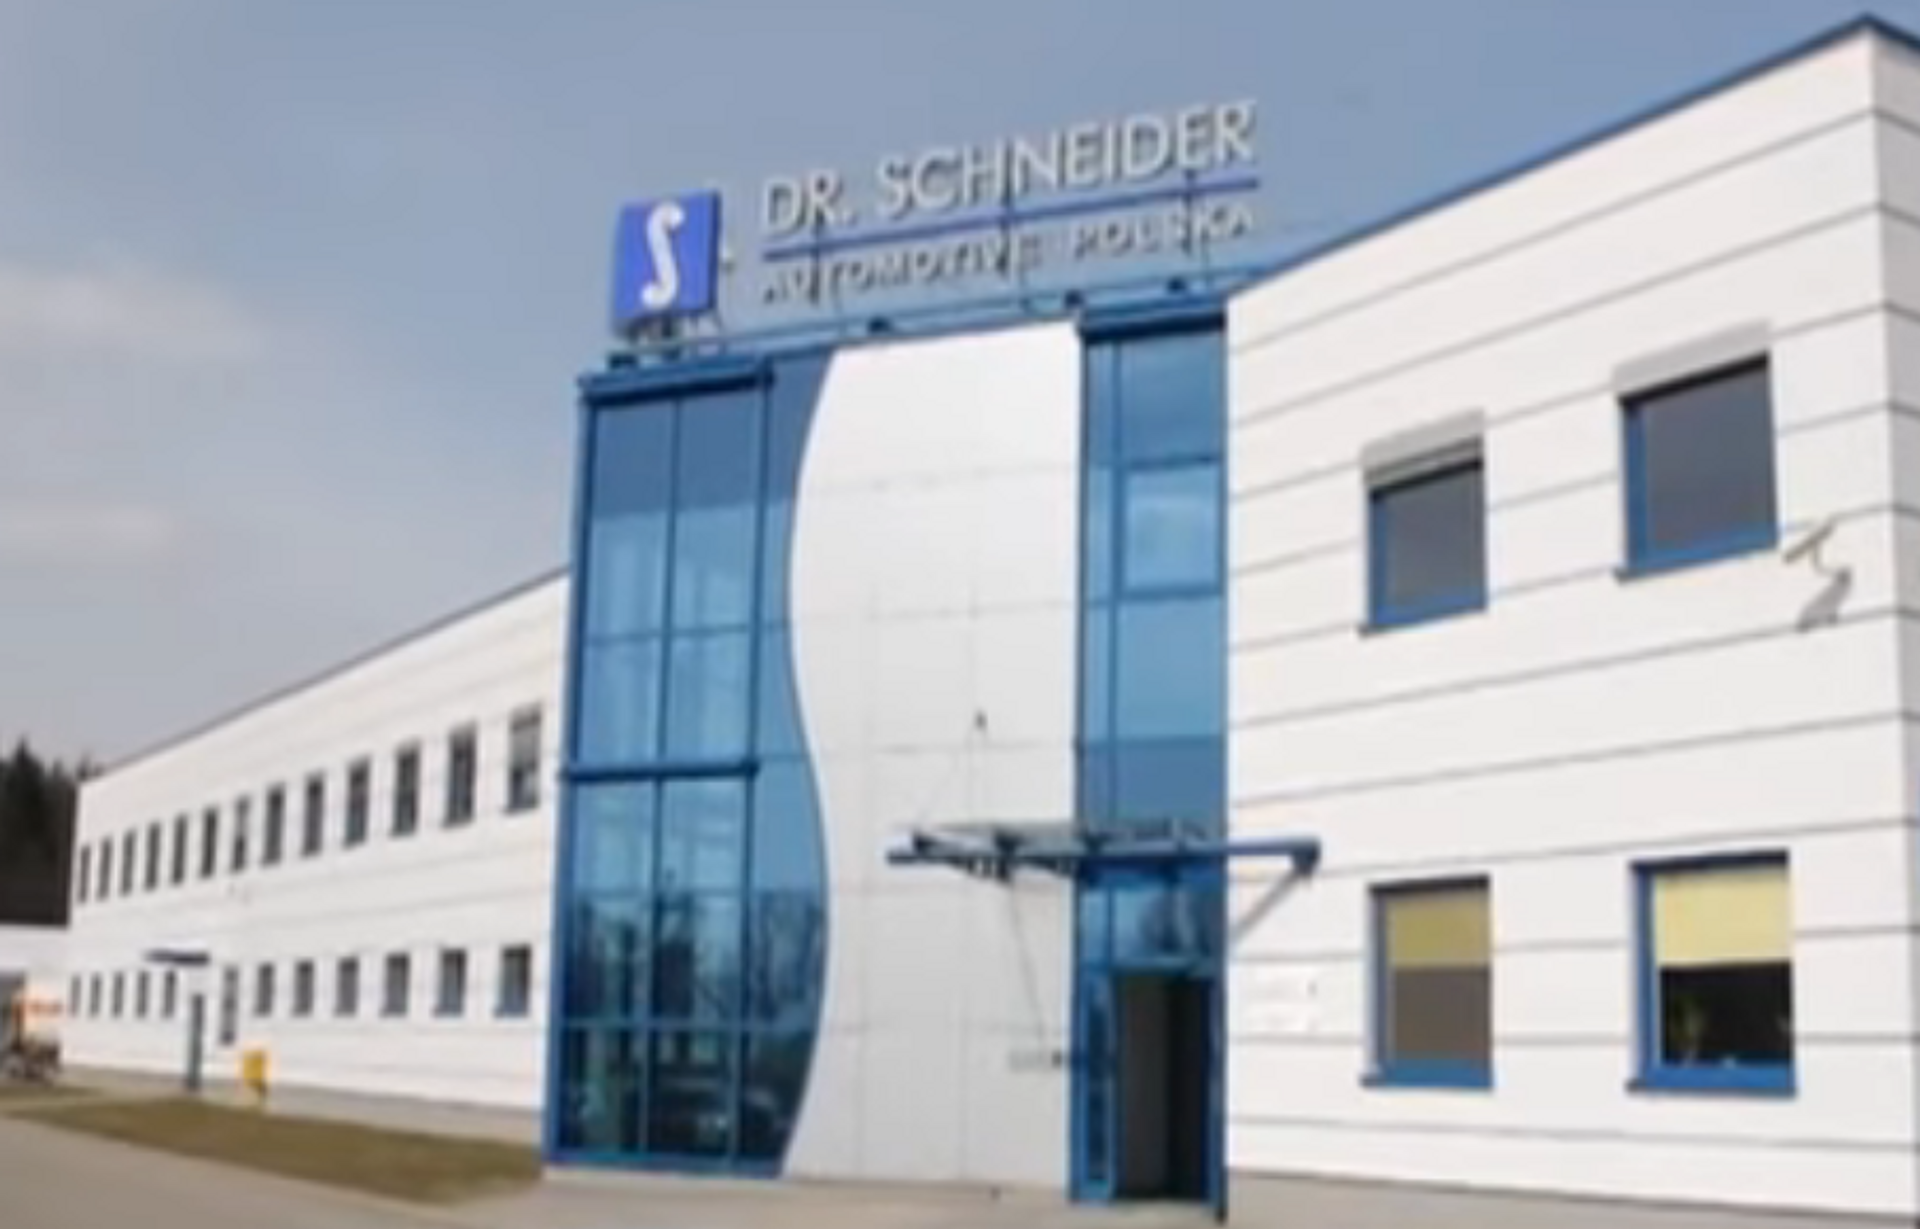  Kolejne nowe miejsca pracy w fabryce Dr. Schneider Automotive Polska